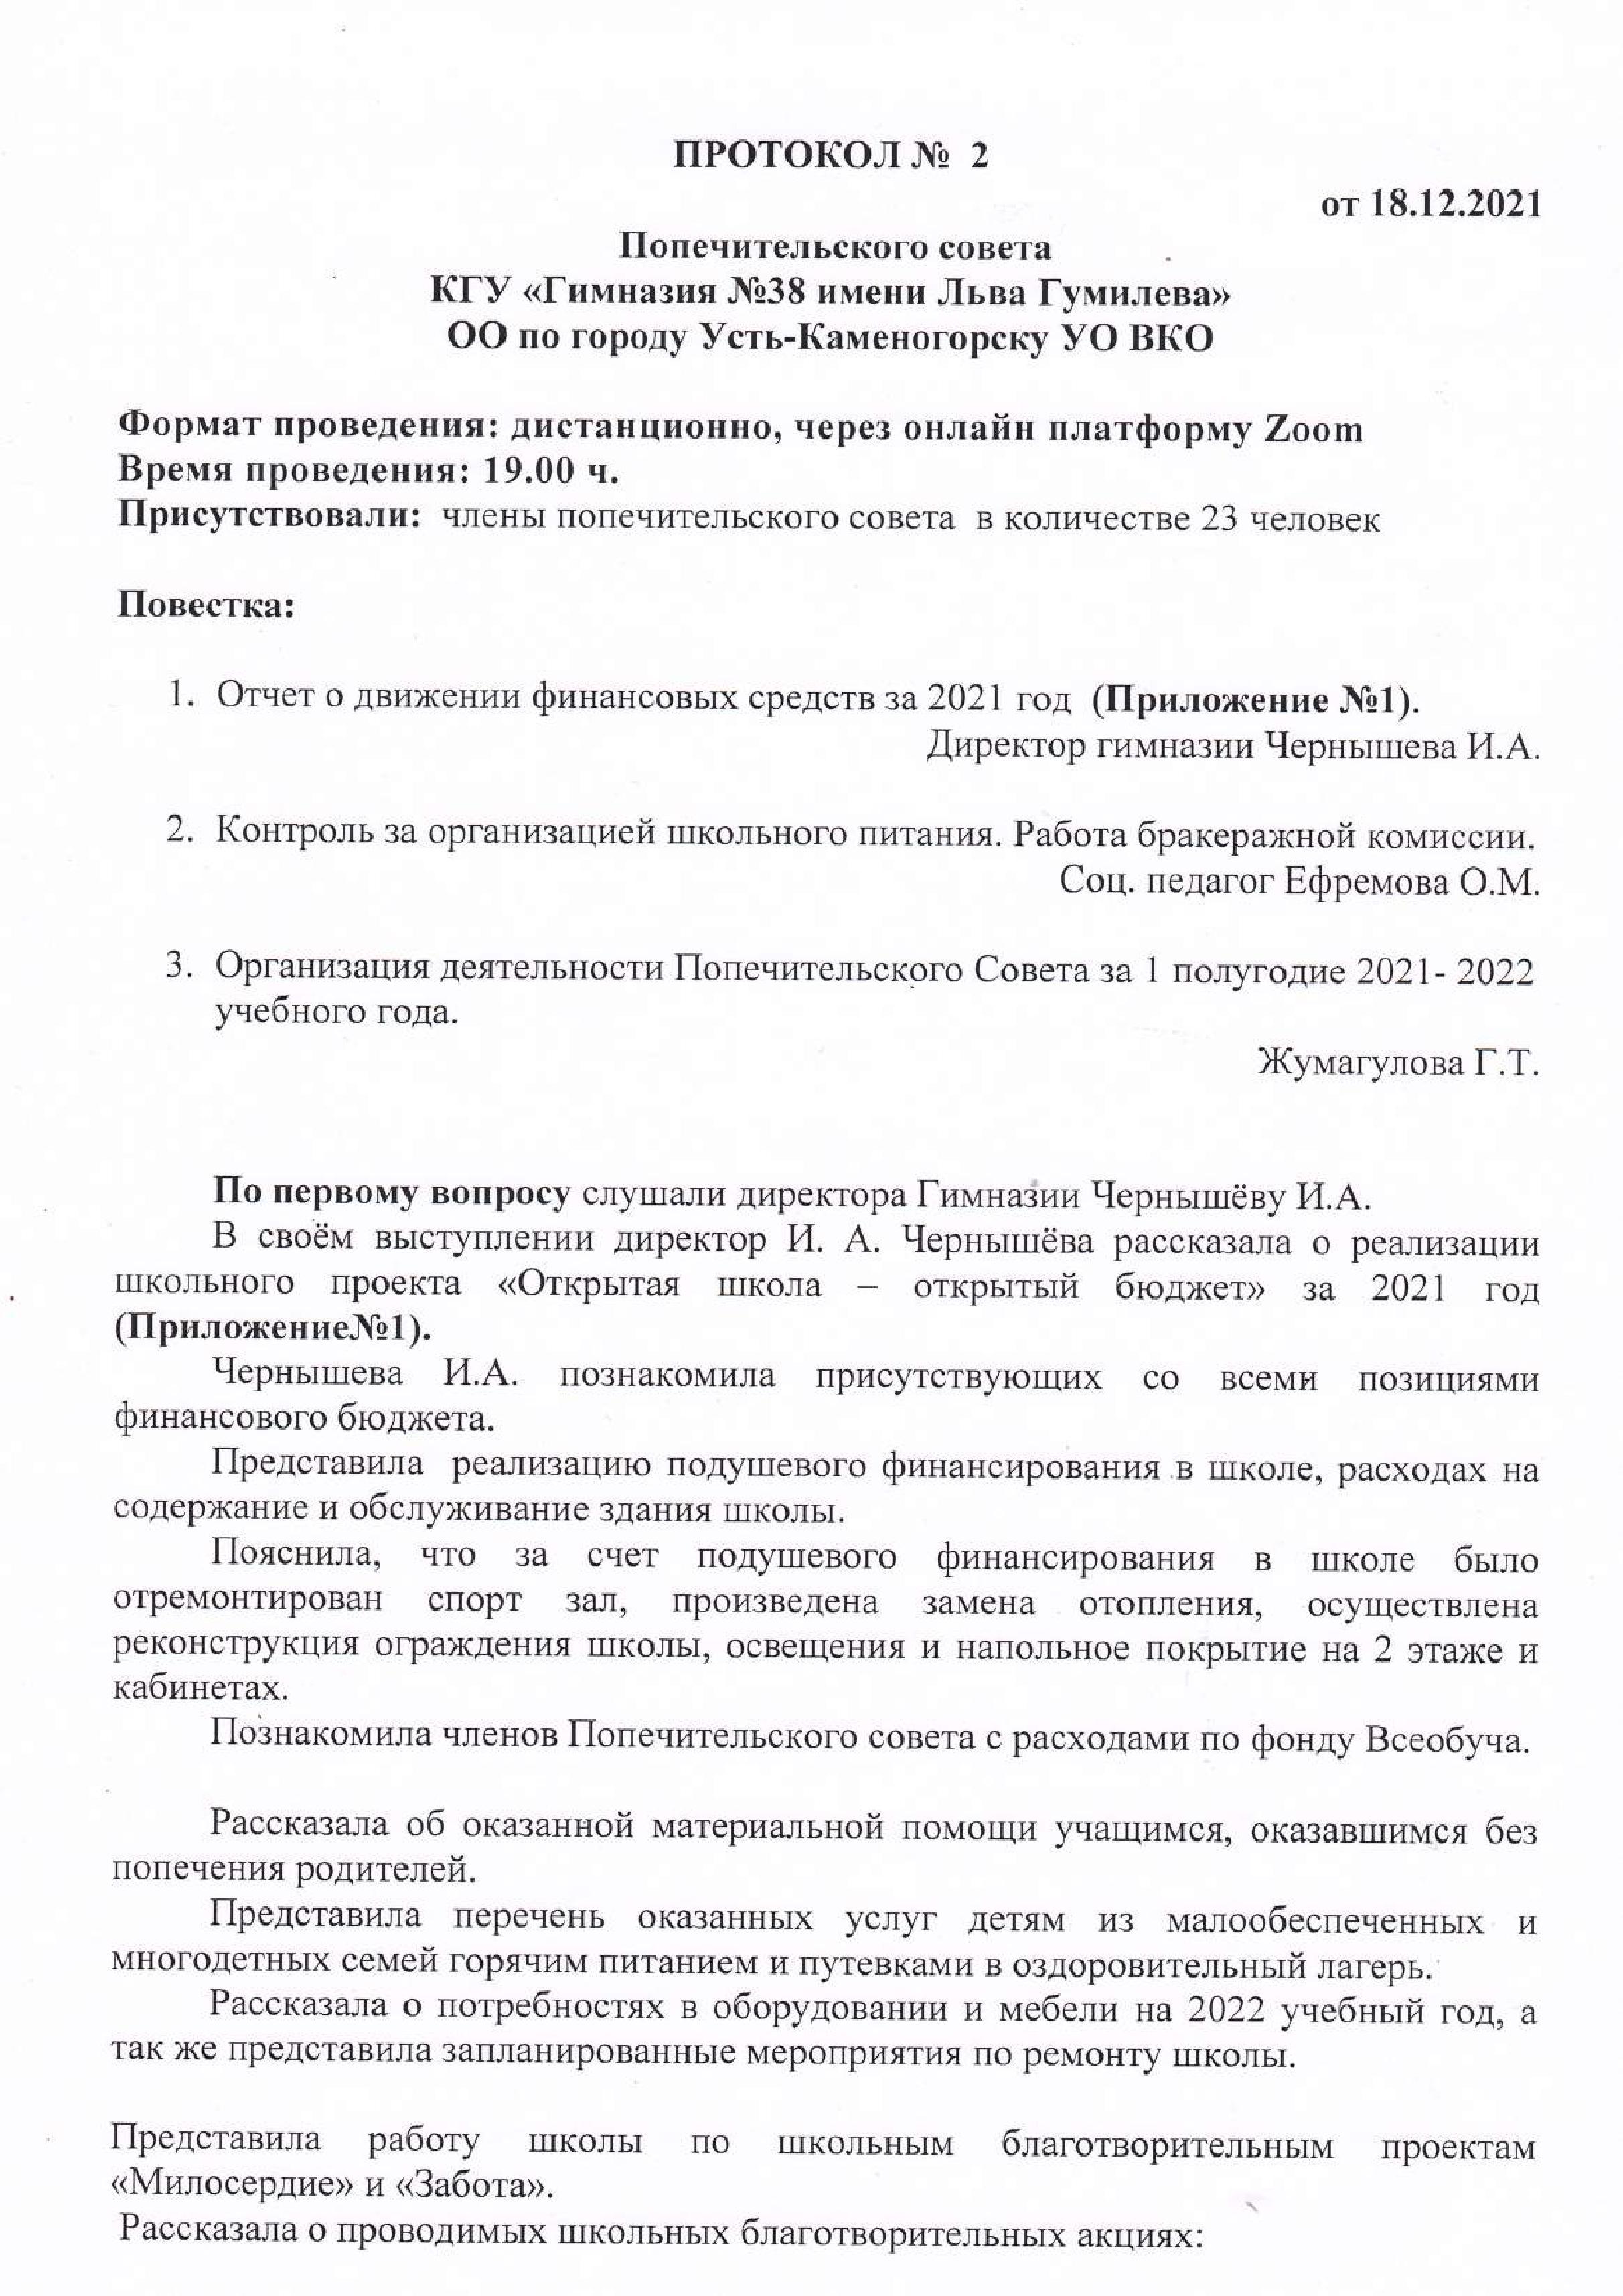 Протокол заседания Попечительского совета №2  от 18.12.21